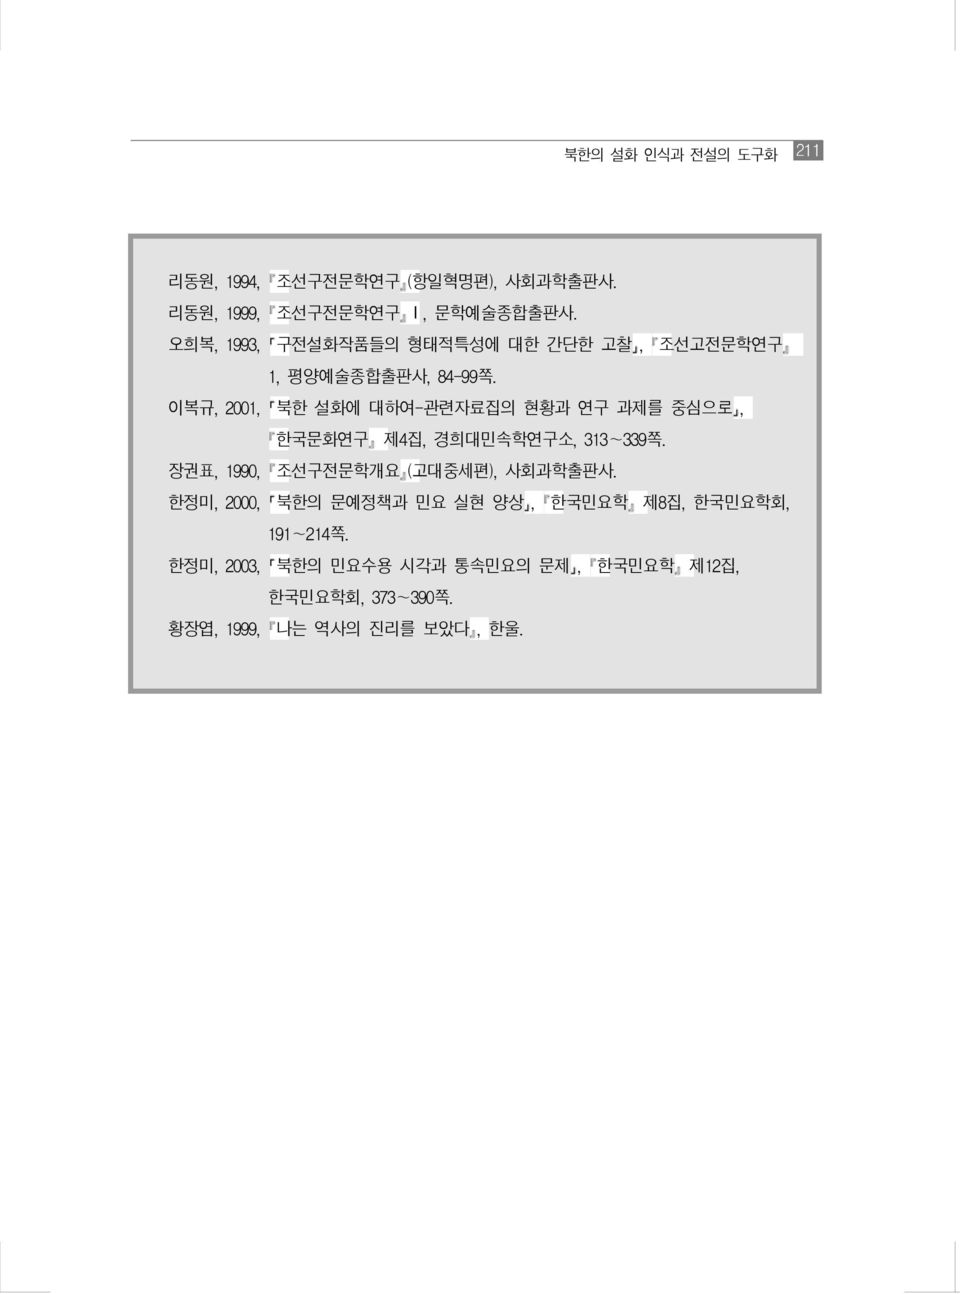 이복규, 2001, 북한 설화에 대하여-관련자료집의 현황과 연구 과제를 중심으로, ꡔ한국문화연구ꡕ 제4집, 경희대민속학연구소, 313~339쪽.